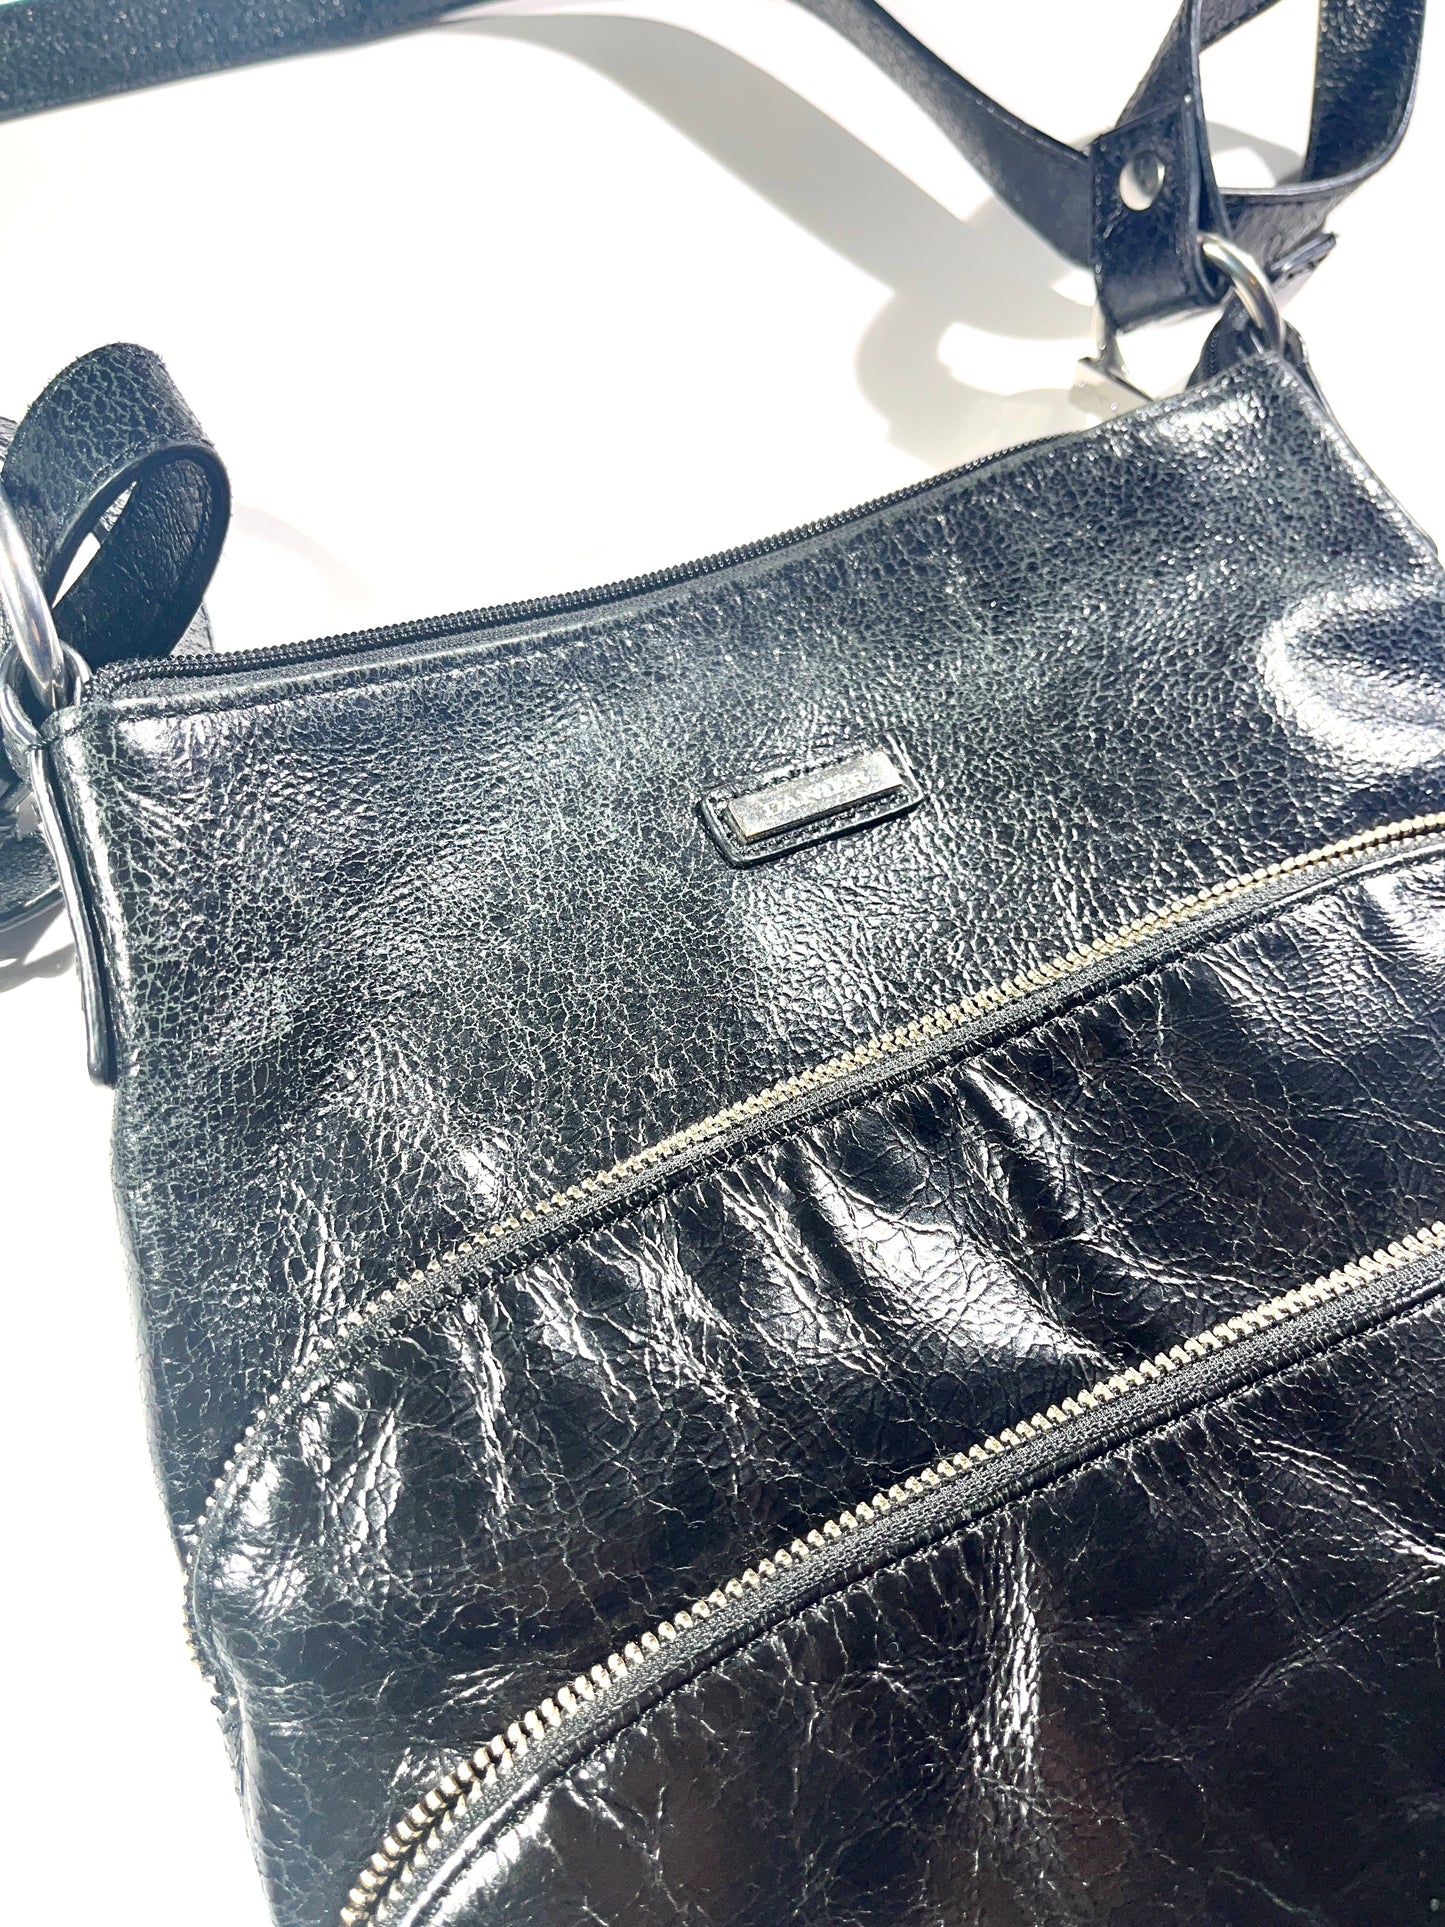 Vintage Danier Leather Bag Pouch Shoulder Sling Purse